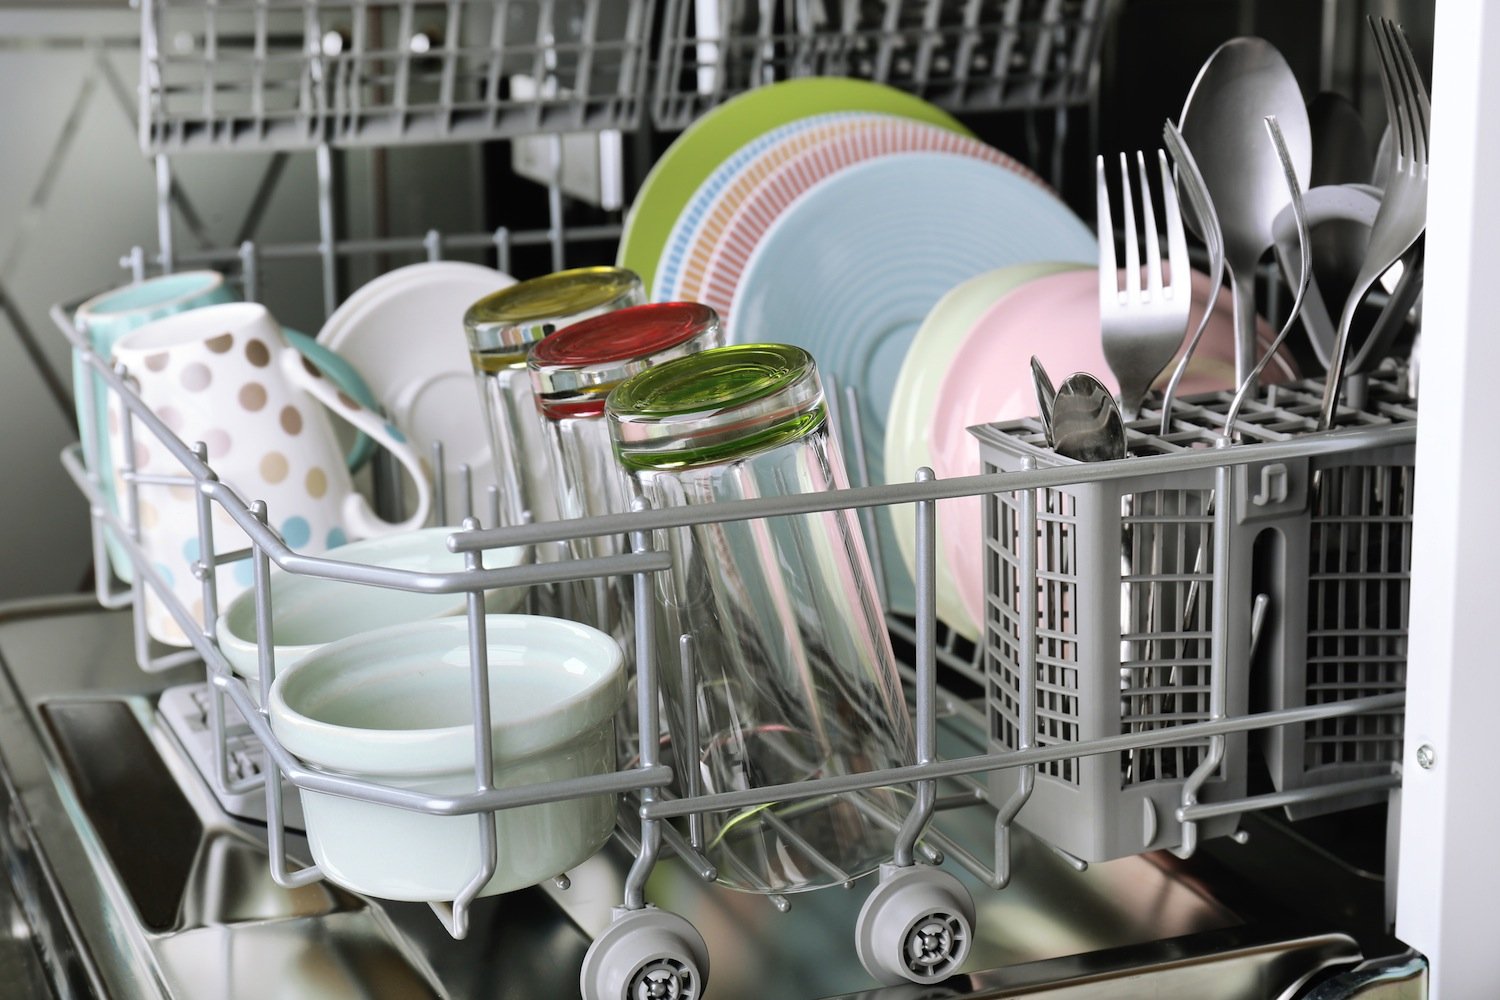 Cinque cose da non mettere in lavastoviglie